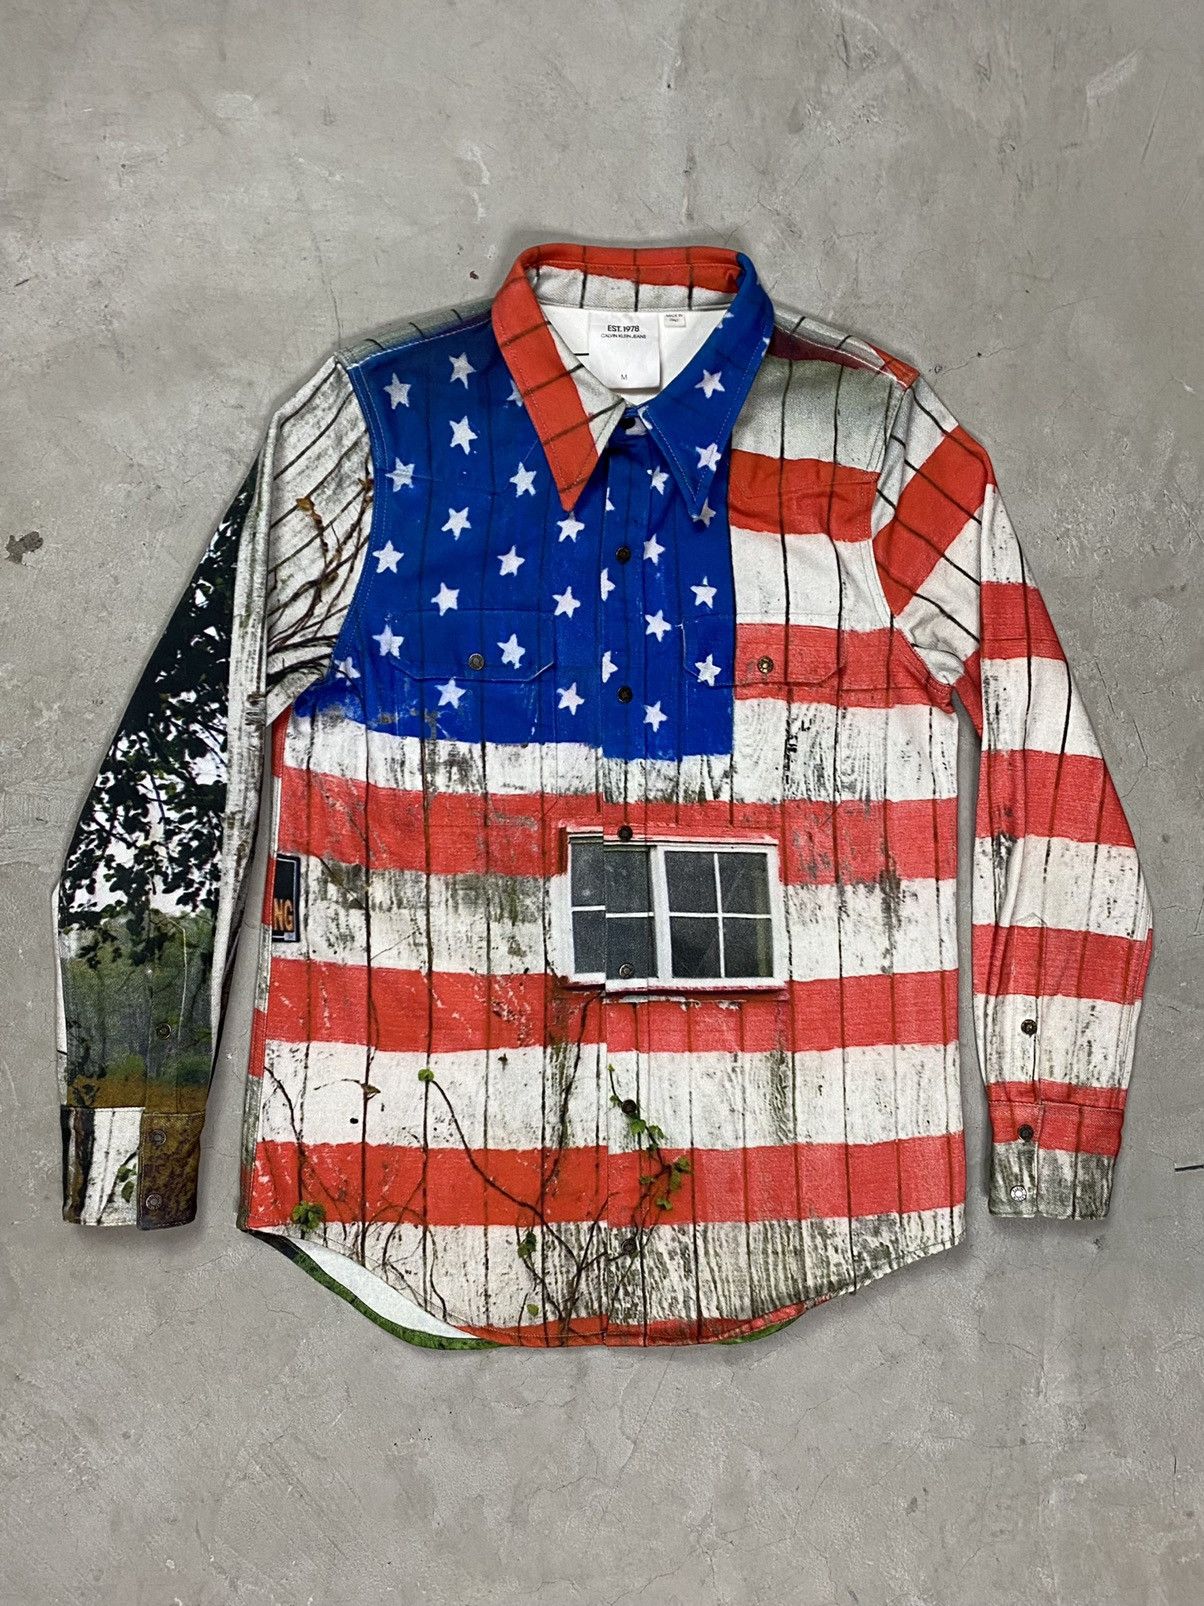 Calvin Klein 205W39NYC American Landscape Denim Trucker Jacket (M